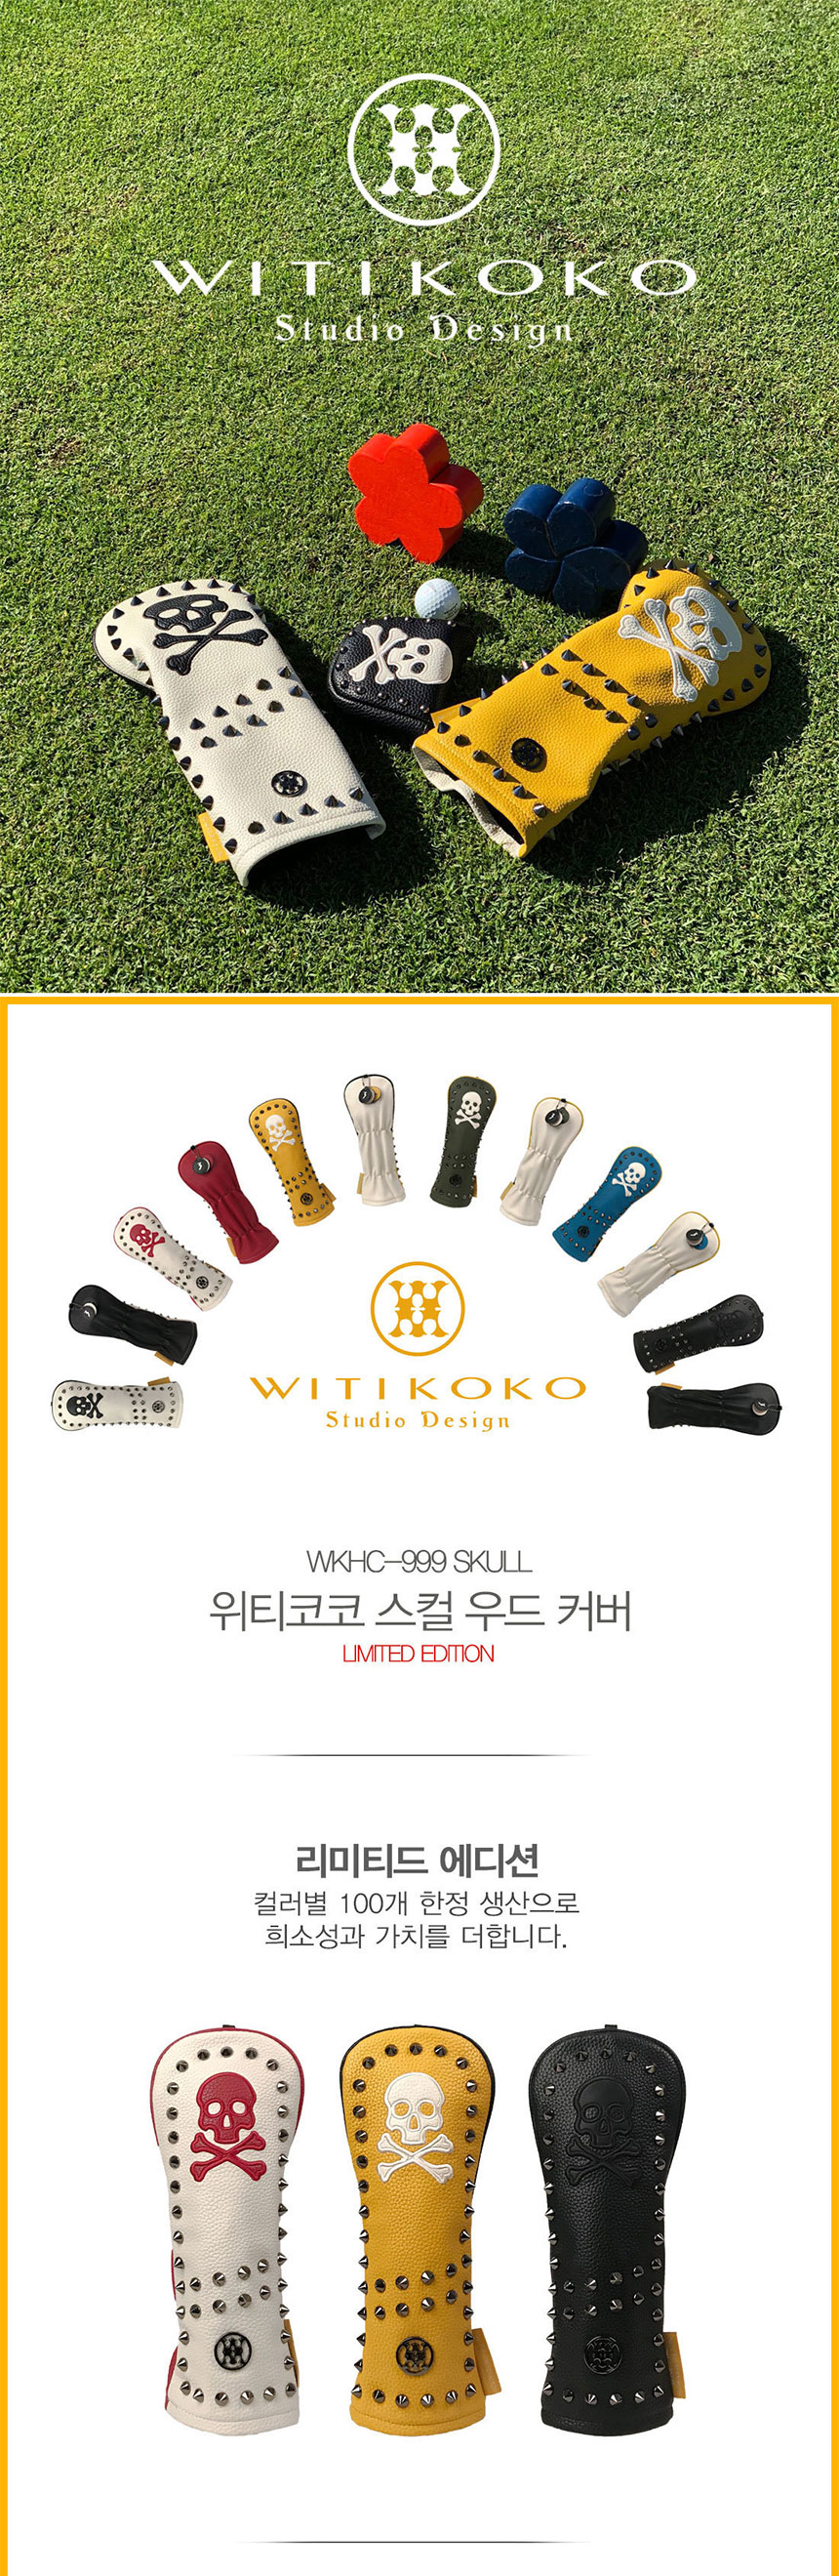 witikoko-999-wood-cover_01_142612.jpg